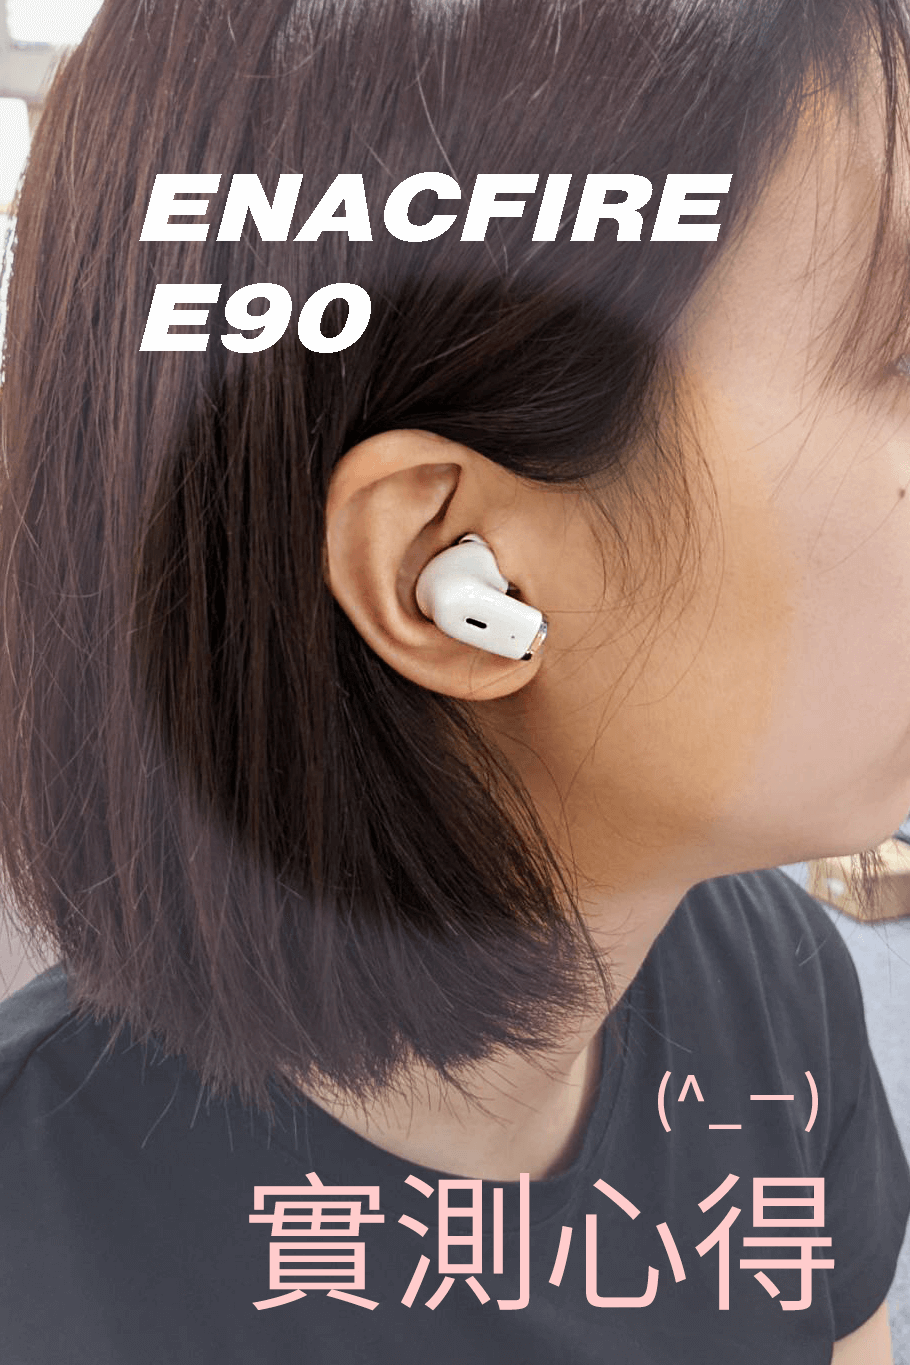 平價藍牙耳機推薦：ENACFIRE E90藍牙耳機開箱實測心得！